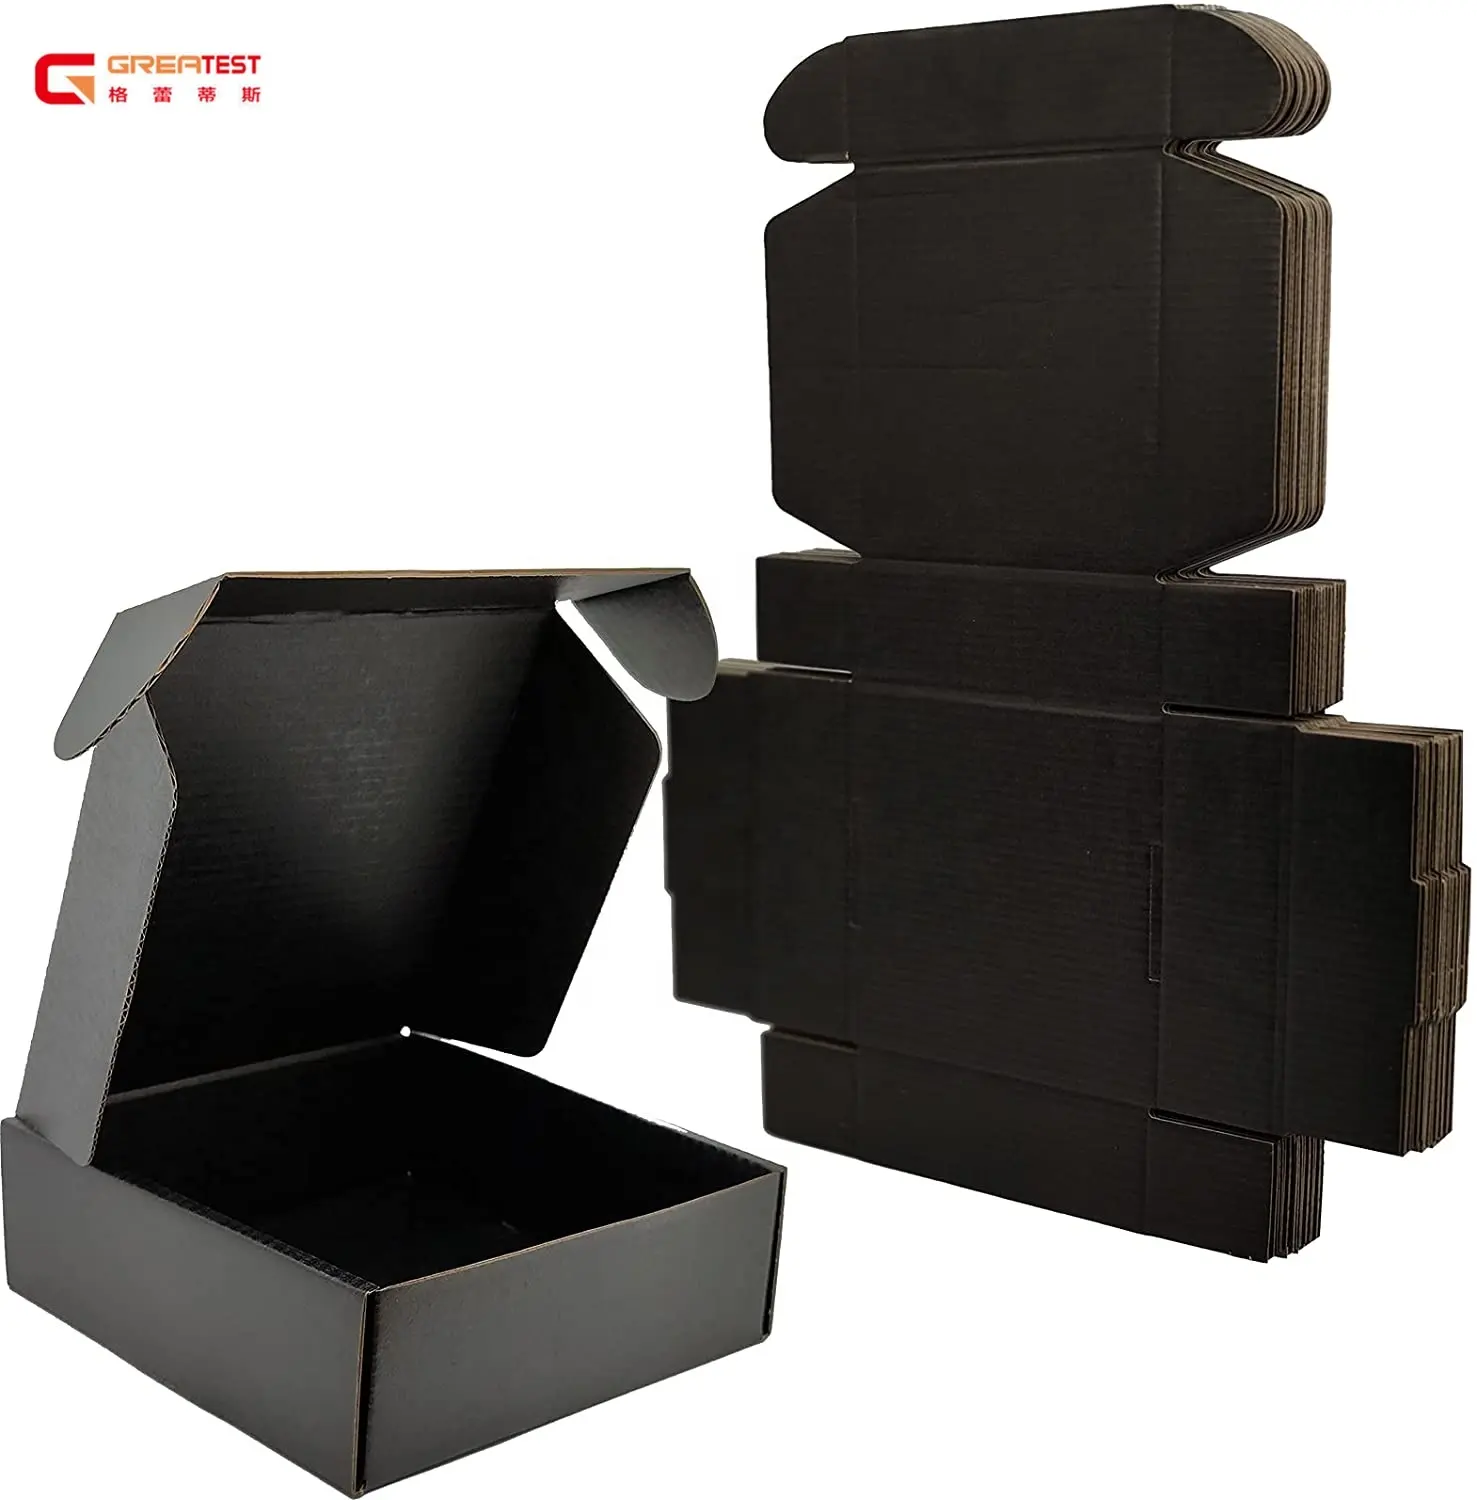 Özel siyah karton kutu ambalaj çerezler ekmek patates cipsi için şekilli rekabetçi fiyata yüksek kalite